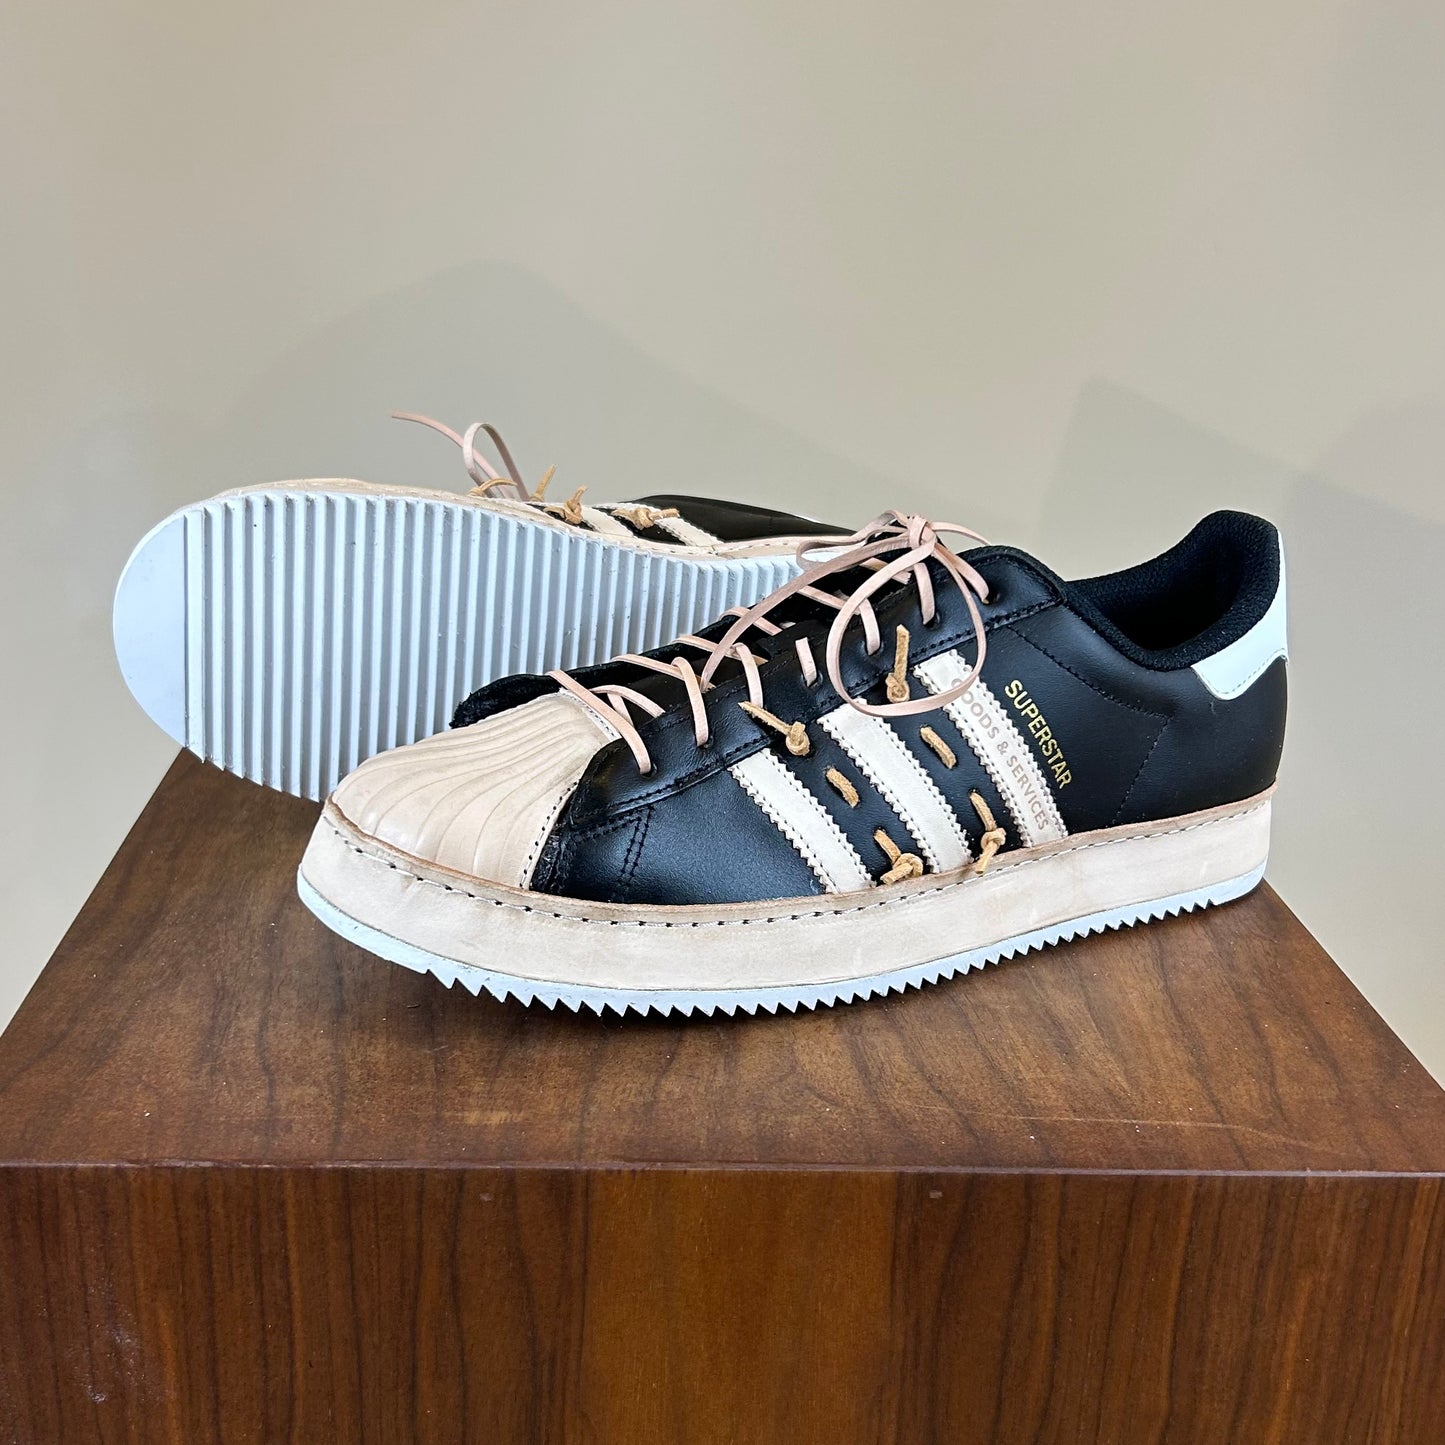 Mima Reggio Emilia - Adidas superstar custom shoes😍❤️ Made by